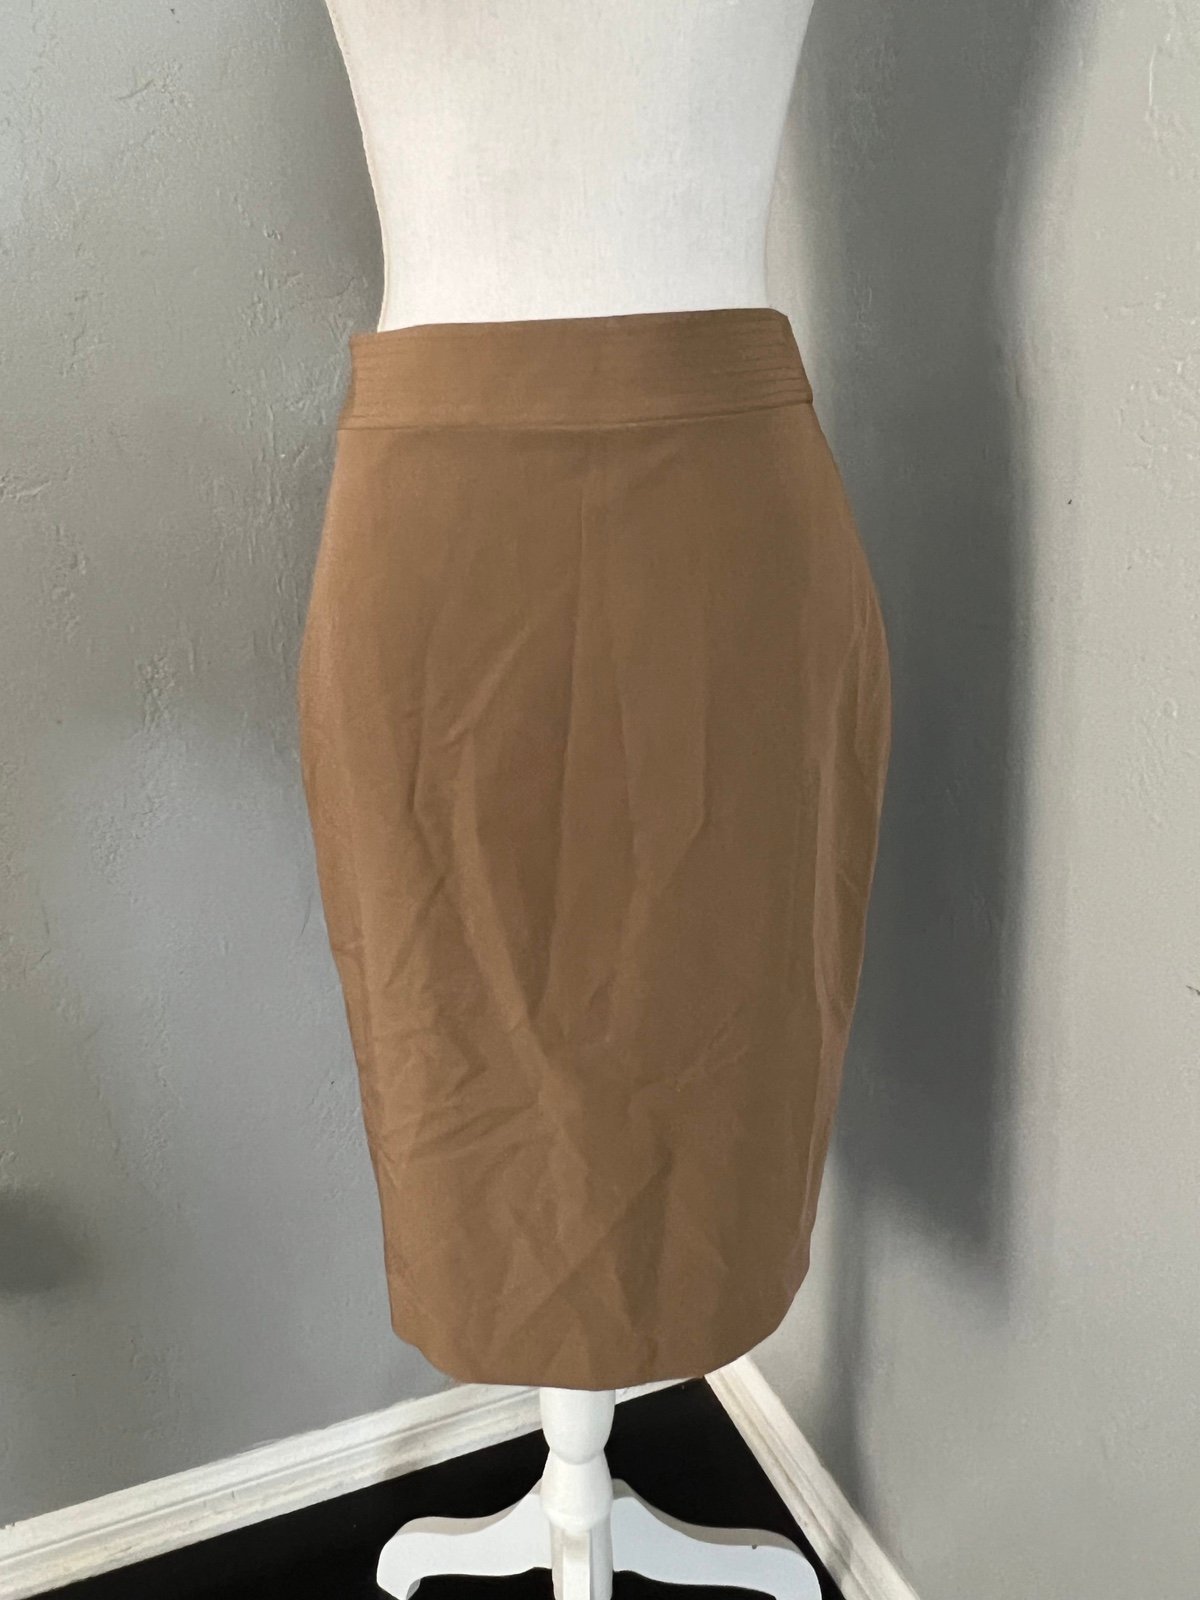 Latest  Georgiou Studio  Skirt size 6 ksSUht7Vk for sal